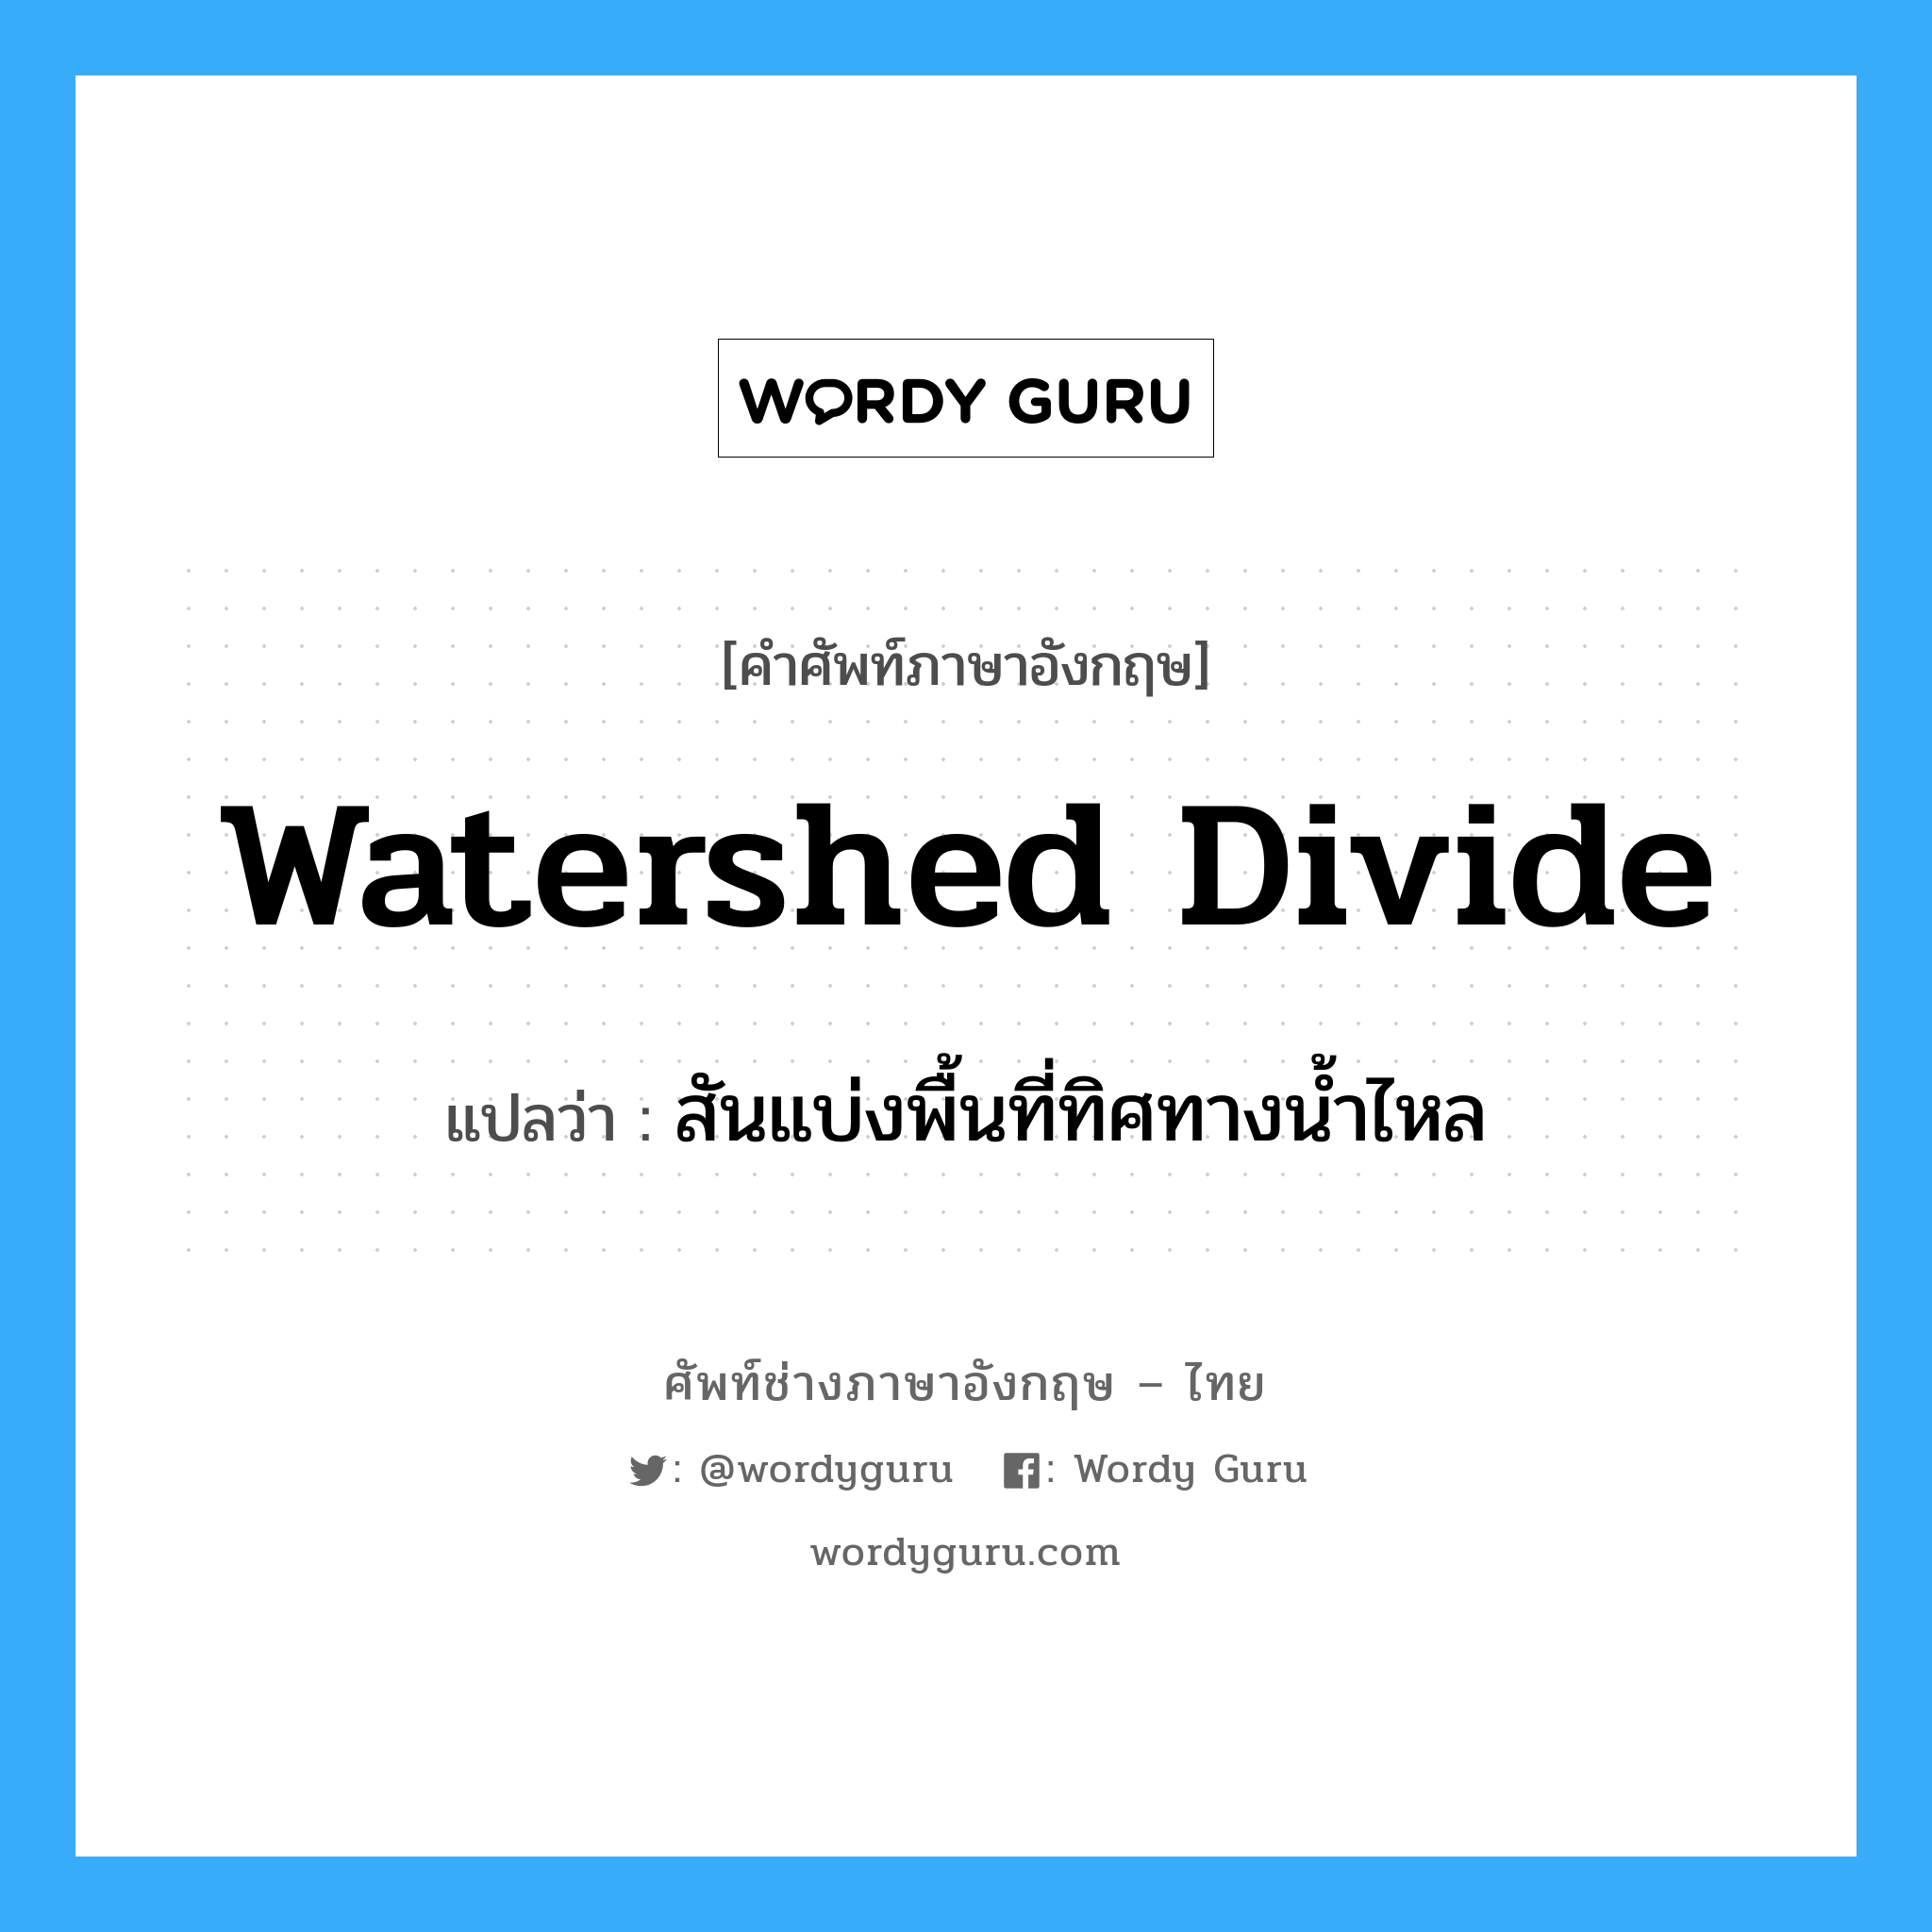 สันแบ่งพื้นที่ทิศทางน้ำไหล ภาษาอังกฤษ?, คำศัพท์ช่างภาษาอังกฤษ - ไทย สันแบ่งพื้นที่ทิศทางน้ำไหล คำศัพท์ภาษาอังกฤษ สันแบ่งพื้นที่ทิศทางน้ำไหล แปลว่า watershed divide